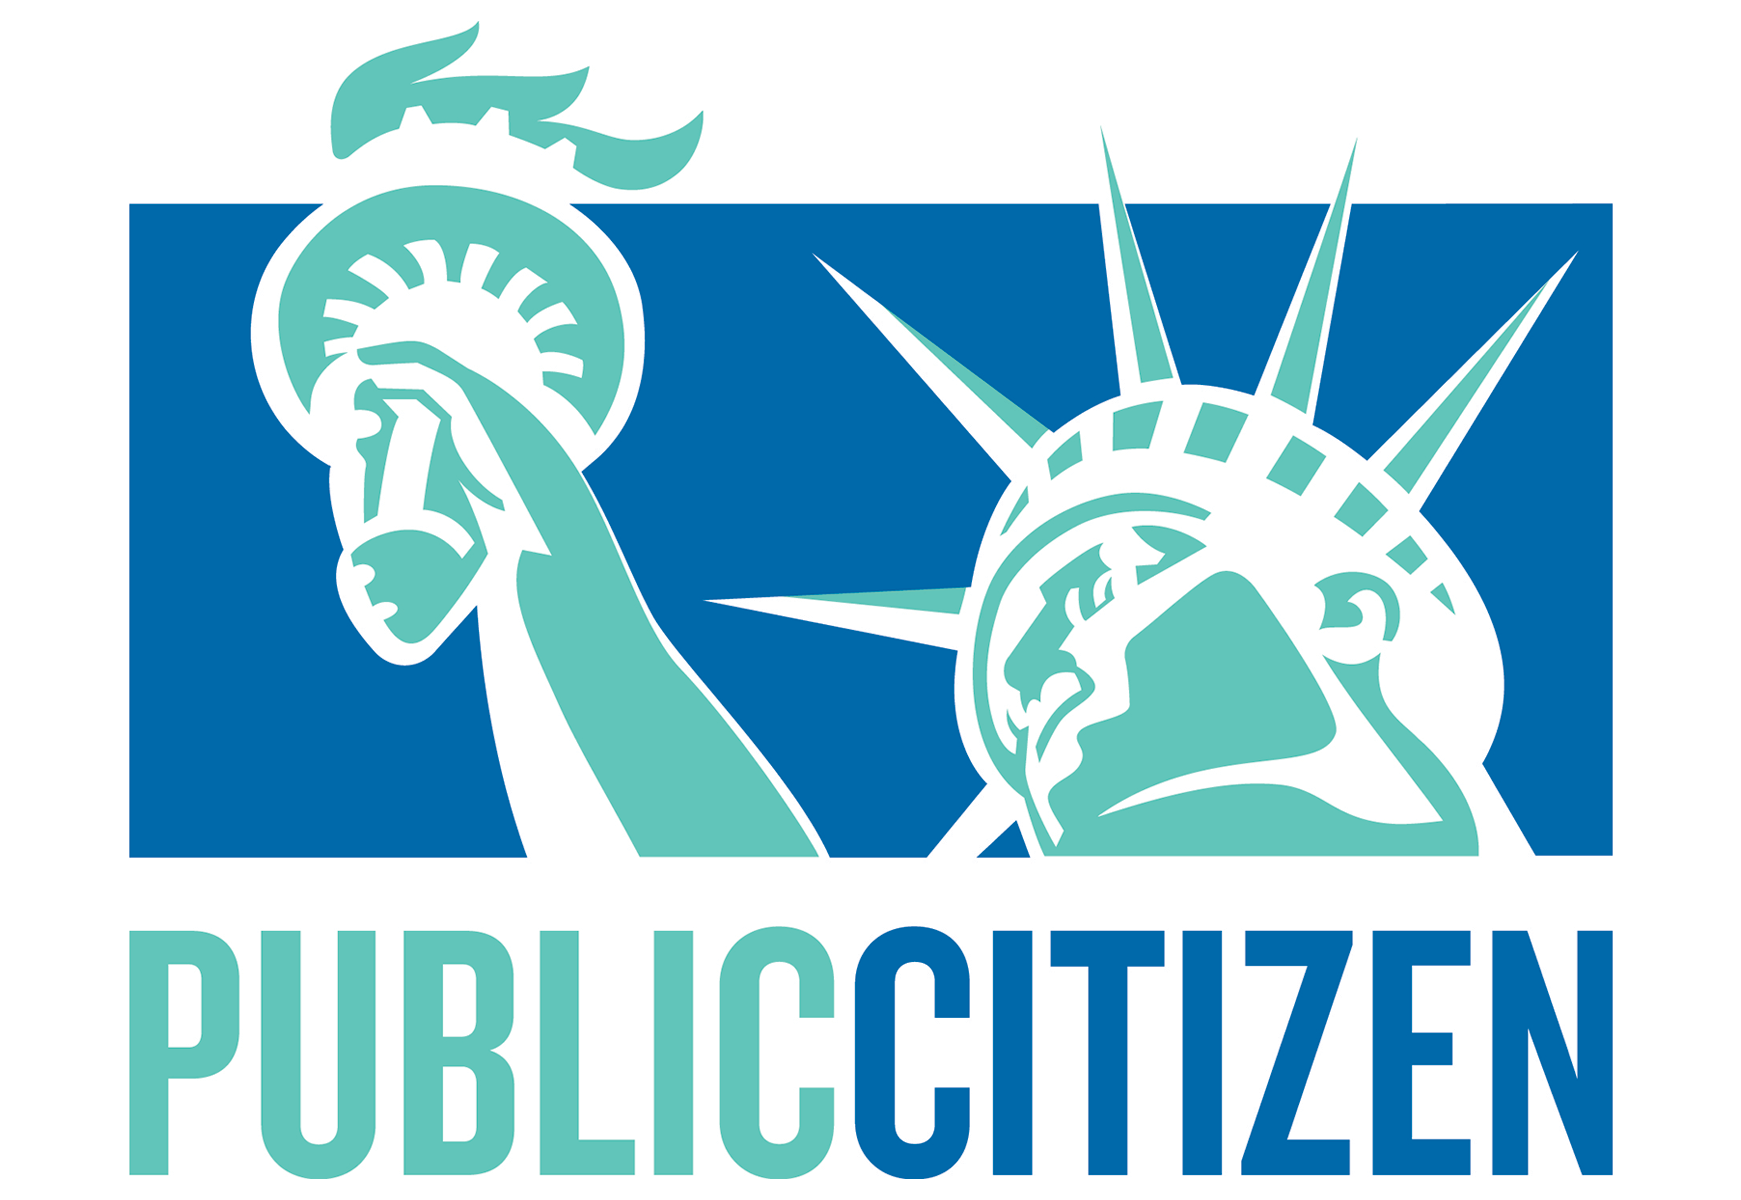 Cidadão Público